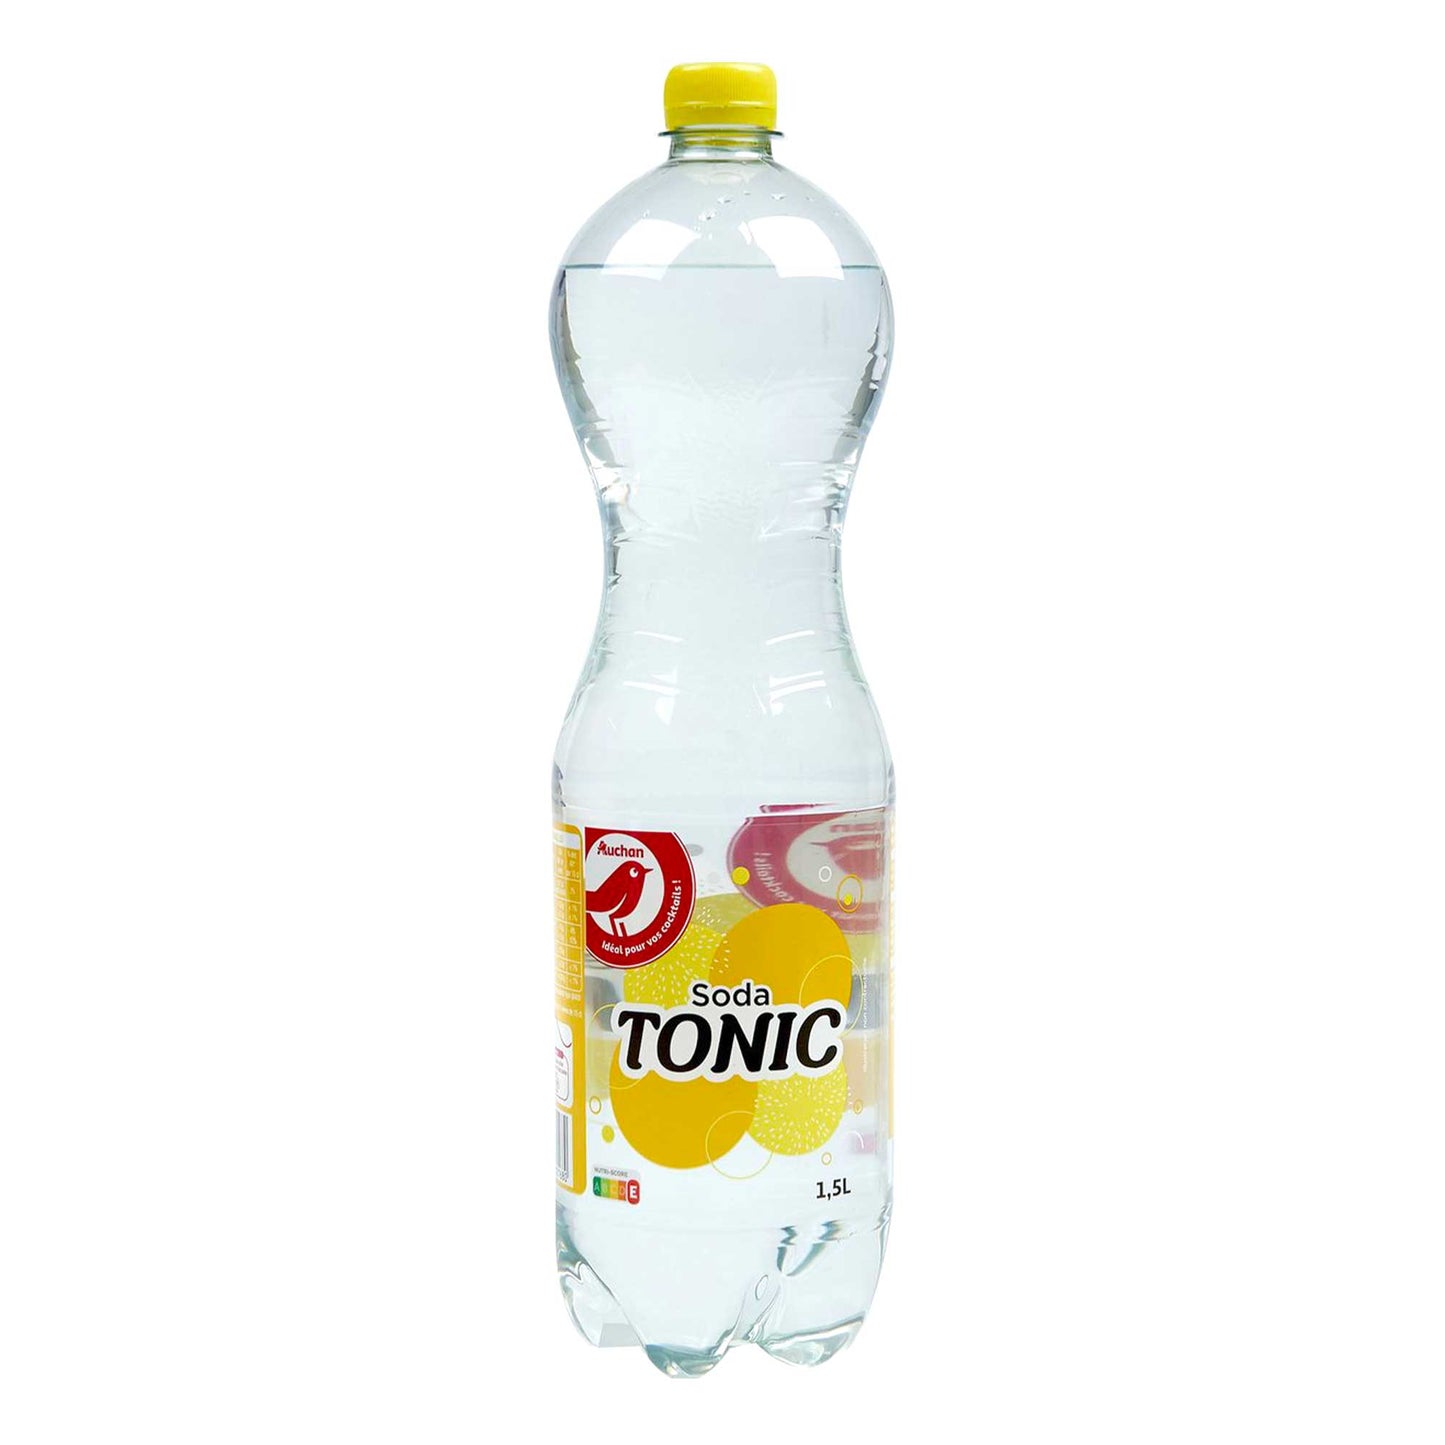 Soda Tonic - 1,5L - Auchan